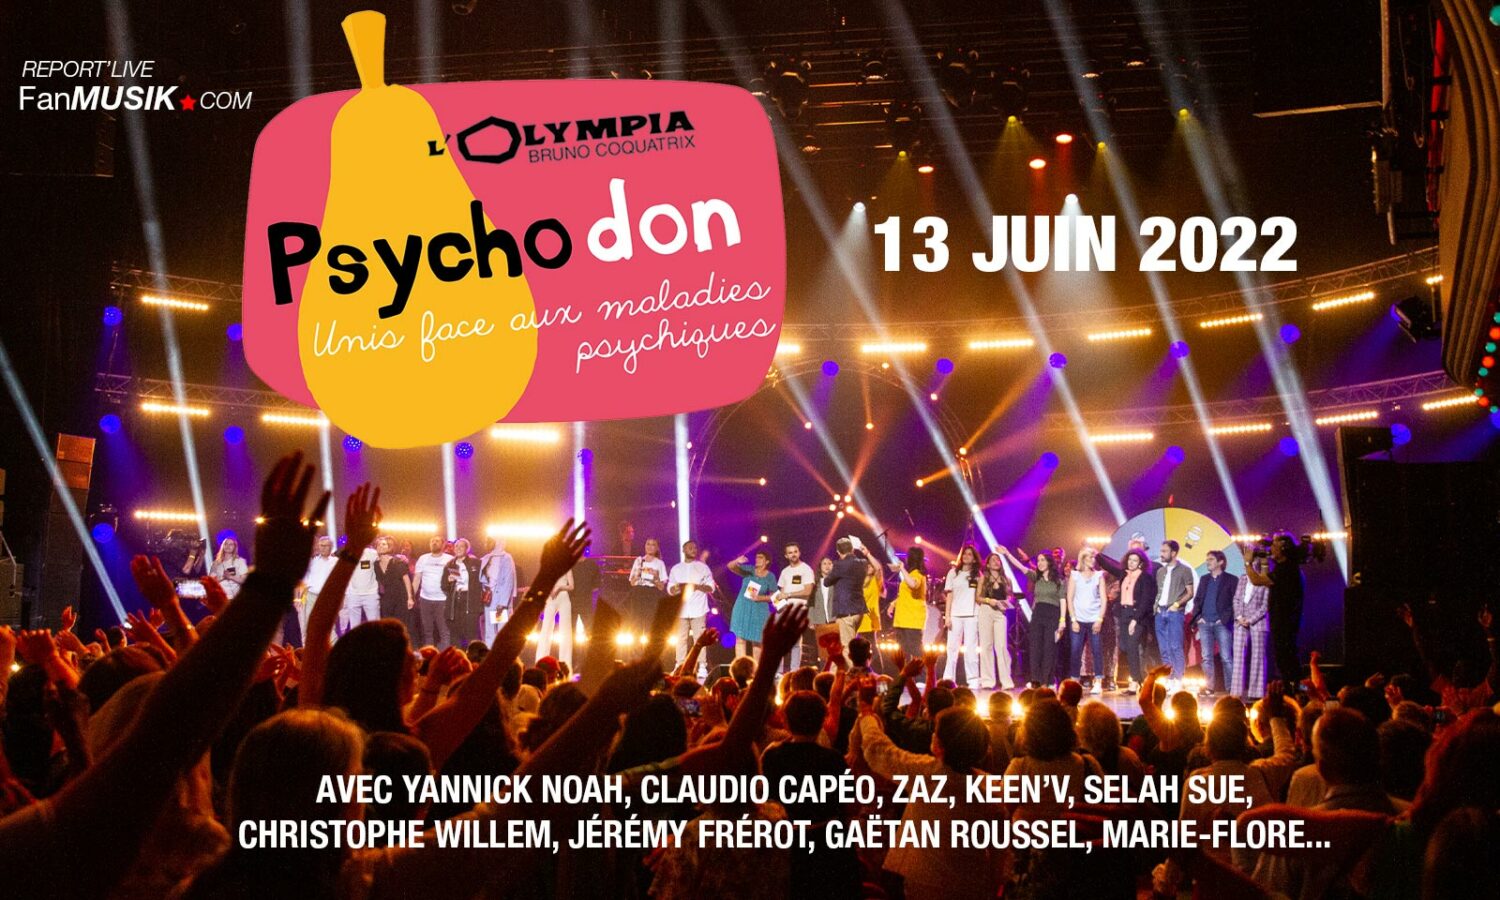 Psychodon 2022, 13 juin 2022 à l’Olympia – Paris